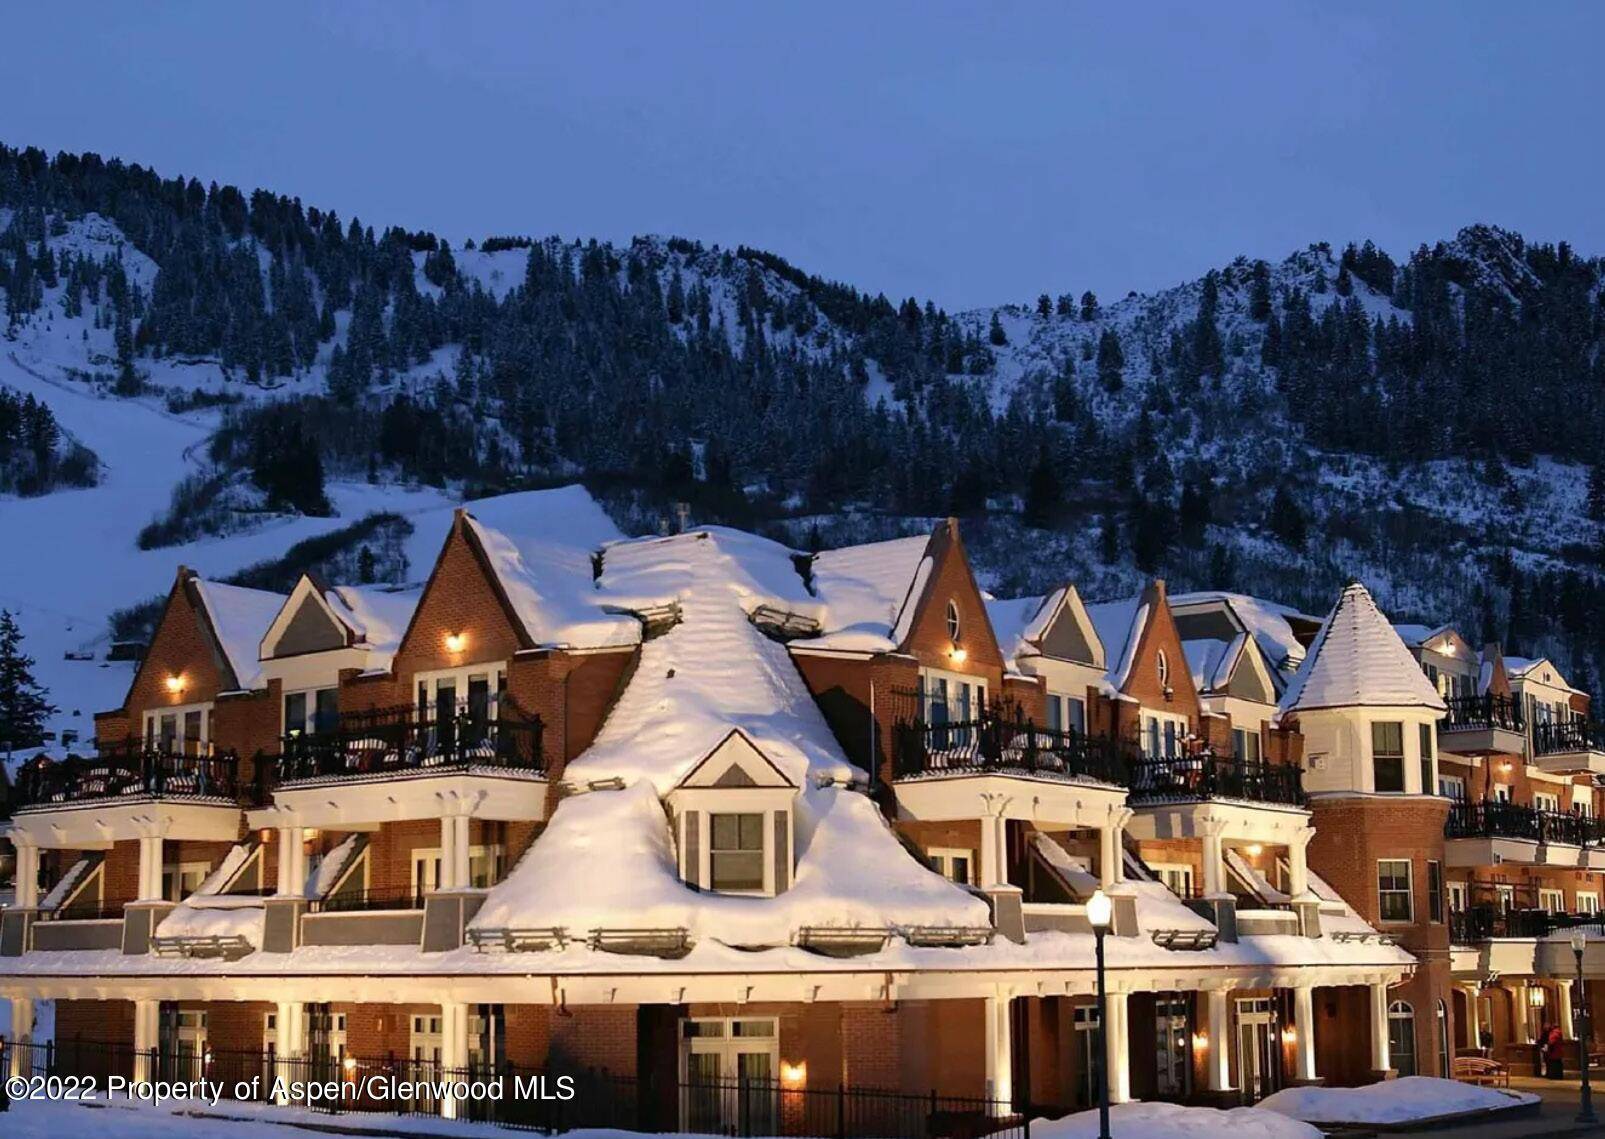 Luxury 3 bedroom, 3 bathroom hotel residence in Aspen Mountain Residences formerly Hyatt.